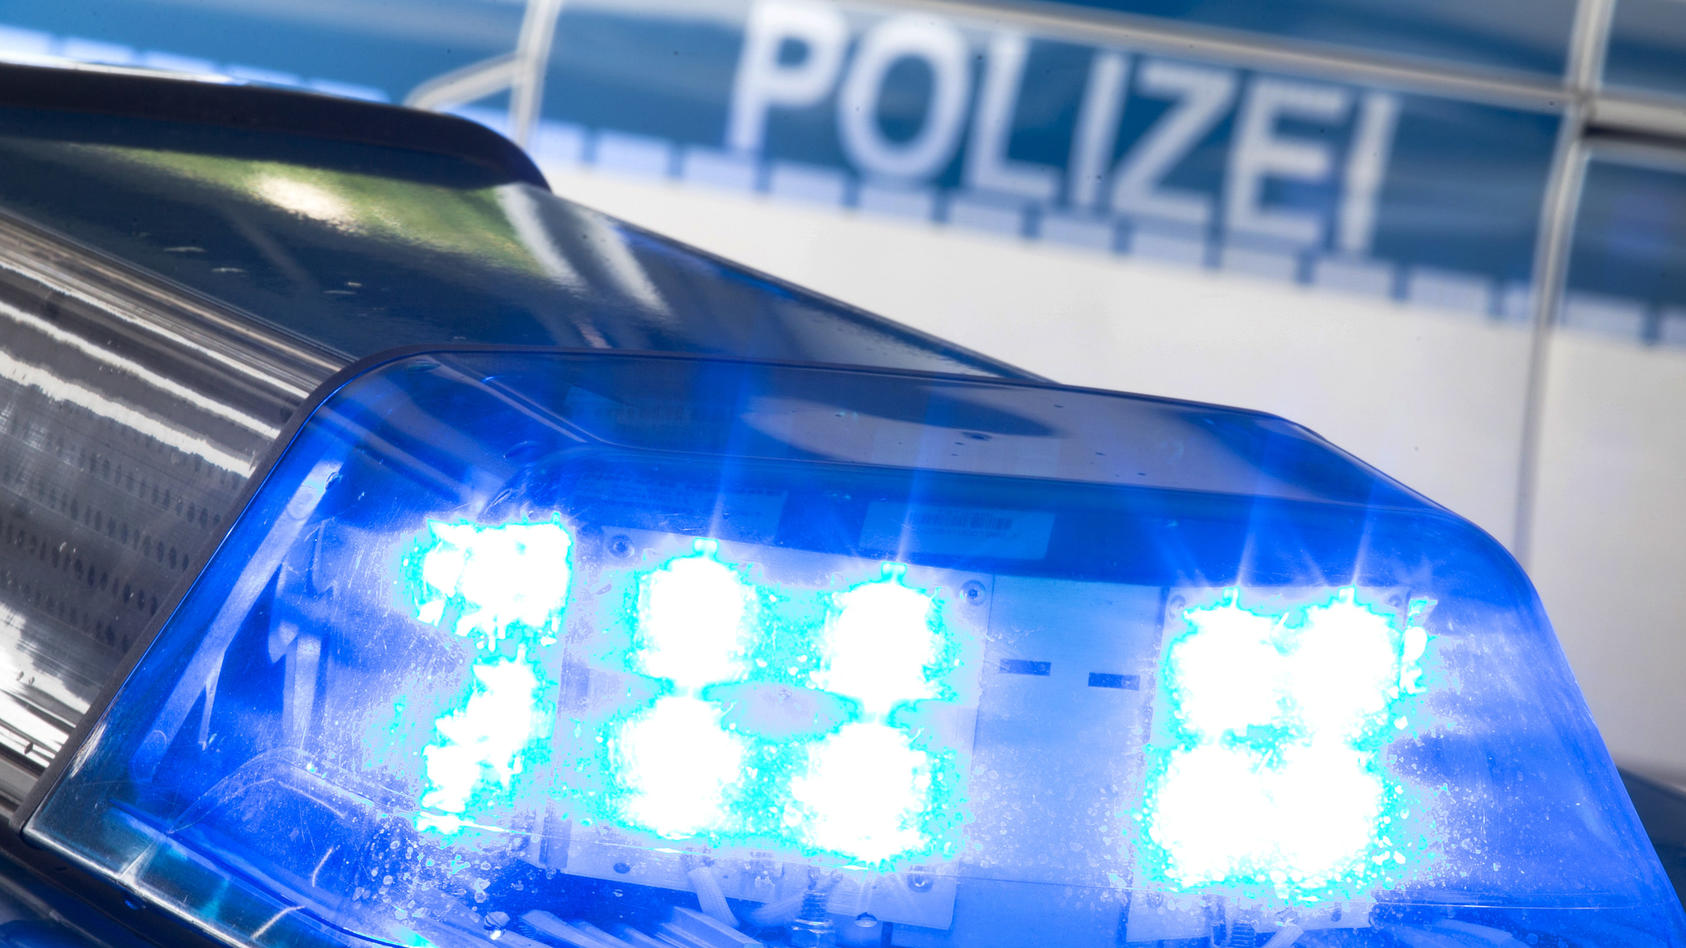 ARCHIV - 27.07.2015, Osnabrück: ILLUSTRATION - Eine Blaulicht leuchtet auf dem Dach eines Polizeiwagens.   (zu dpa «Eingebrochen, abgestürzt, festgenommen - Kuriose Kriminalfälle 2018» vom 14.12.2018) Foto: Friso Gentsch/dpa +++ dpa-Bildfunk +++